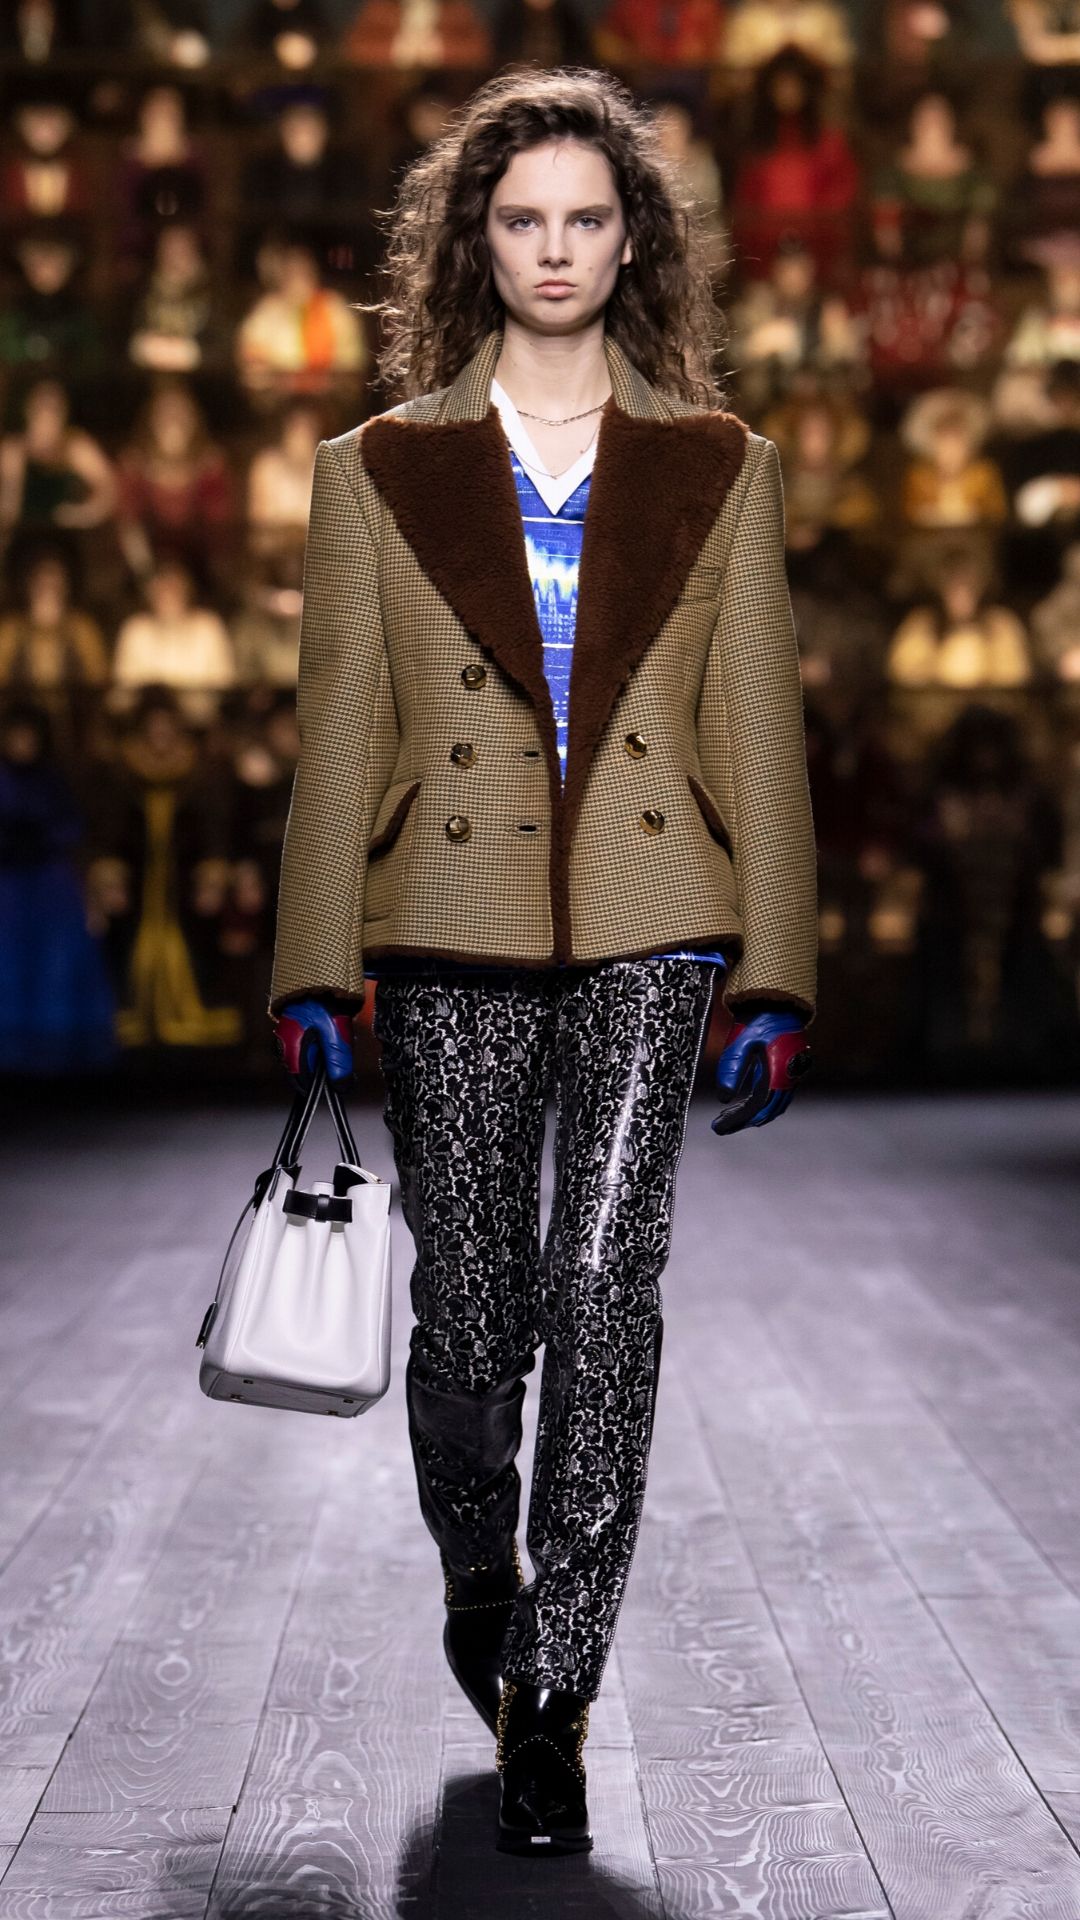 Top 10 Looks From Louis Vuitton's A/W20 Runway | Harper's Bazaar Arabia